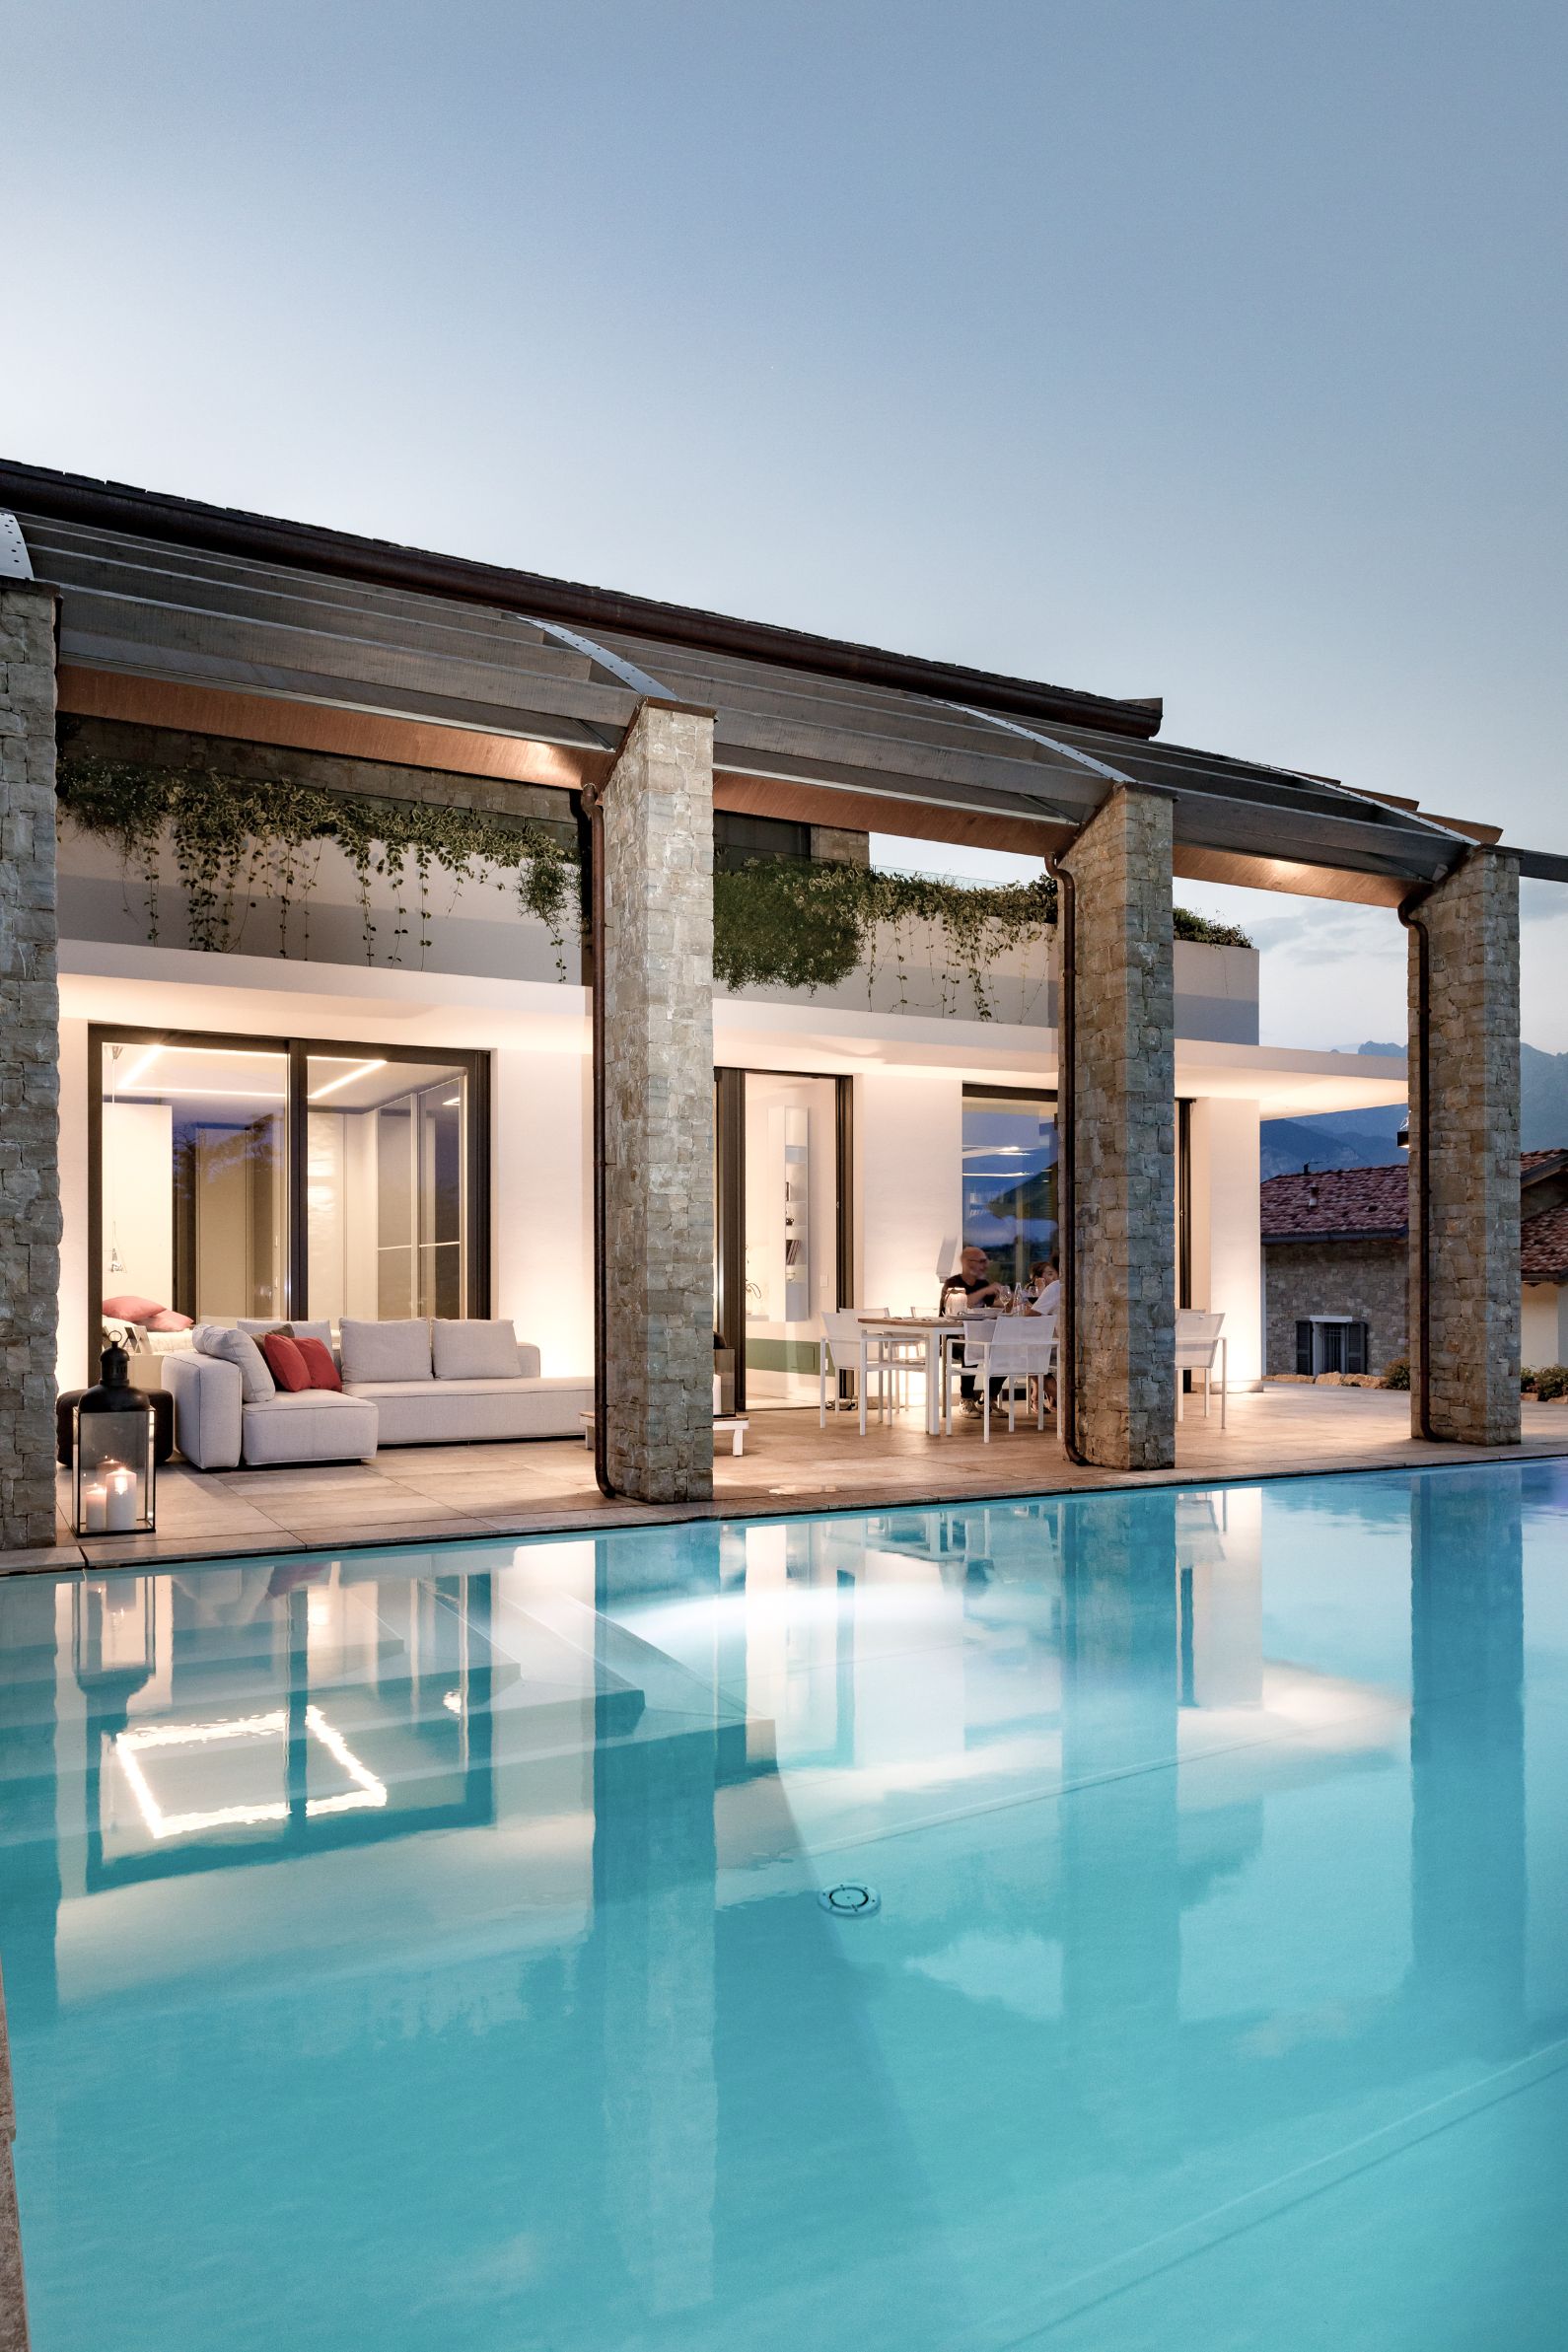 Villa a Merate, Progetto di interni, 200mq

Cliente privato, 2017